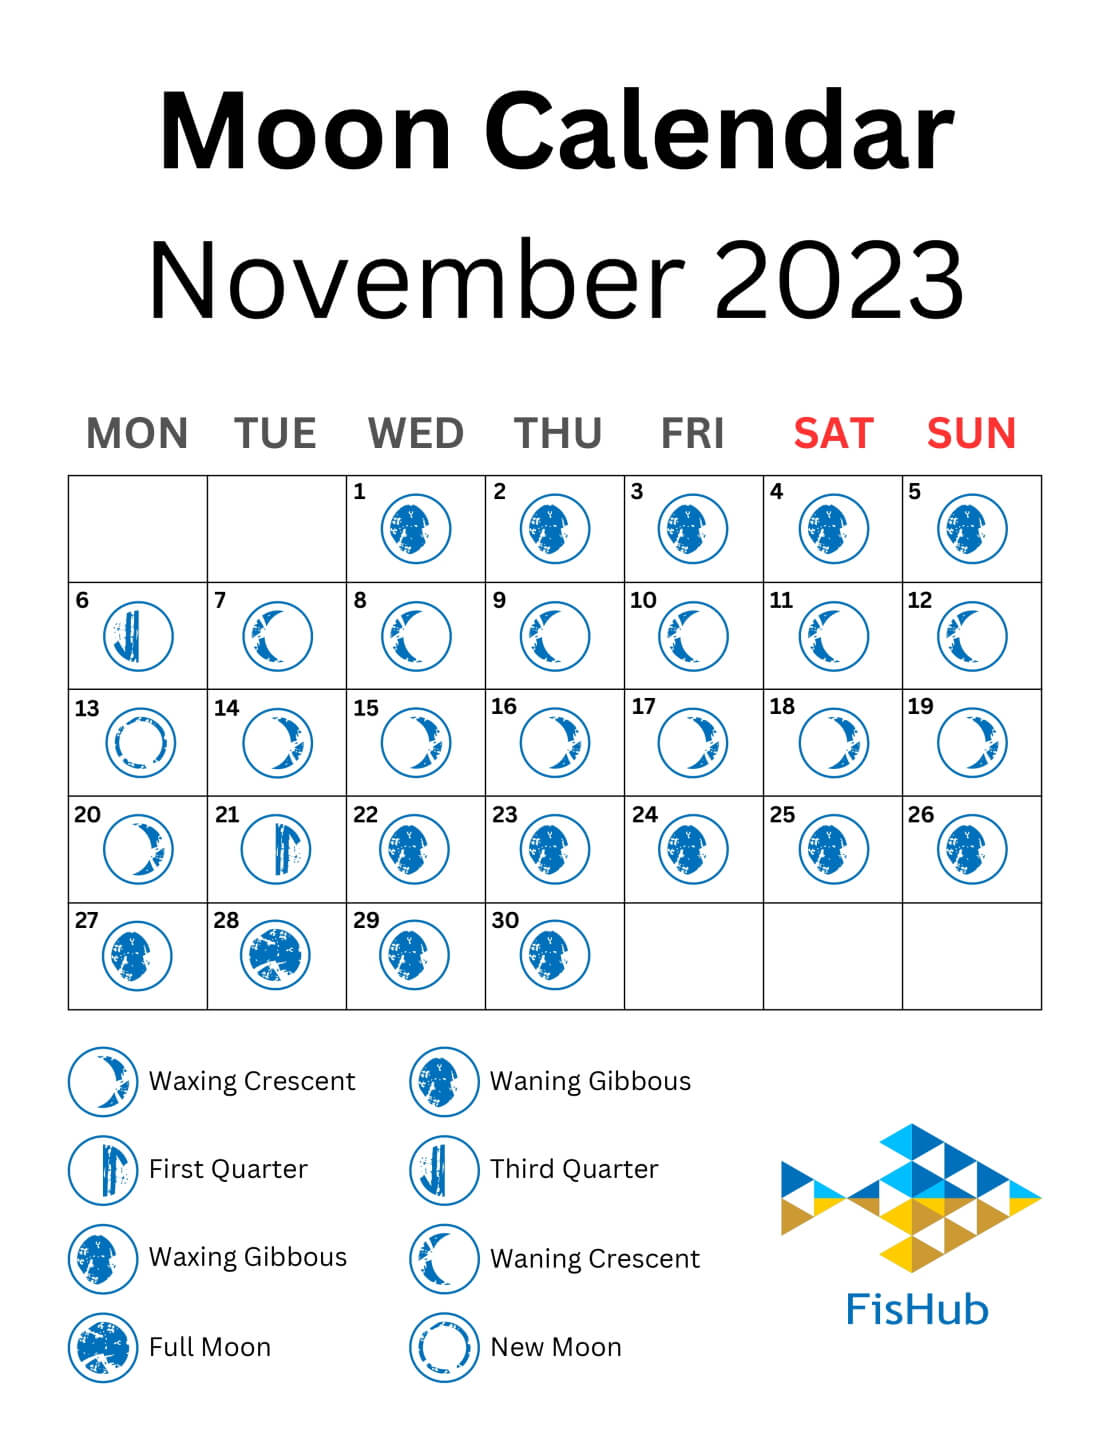 Moon Calendar of November 2023